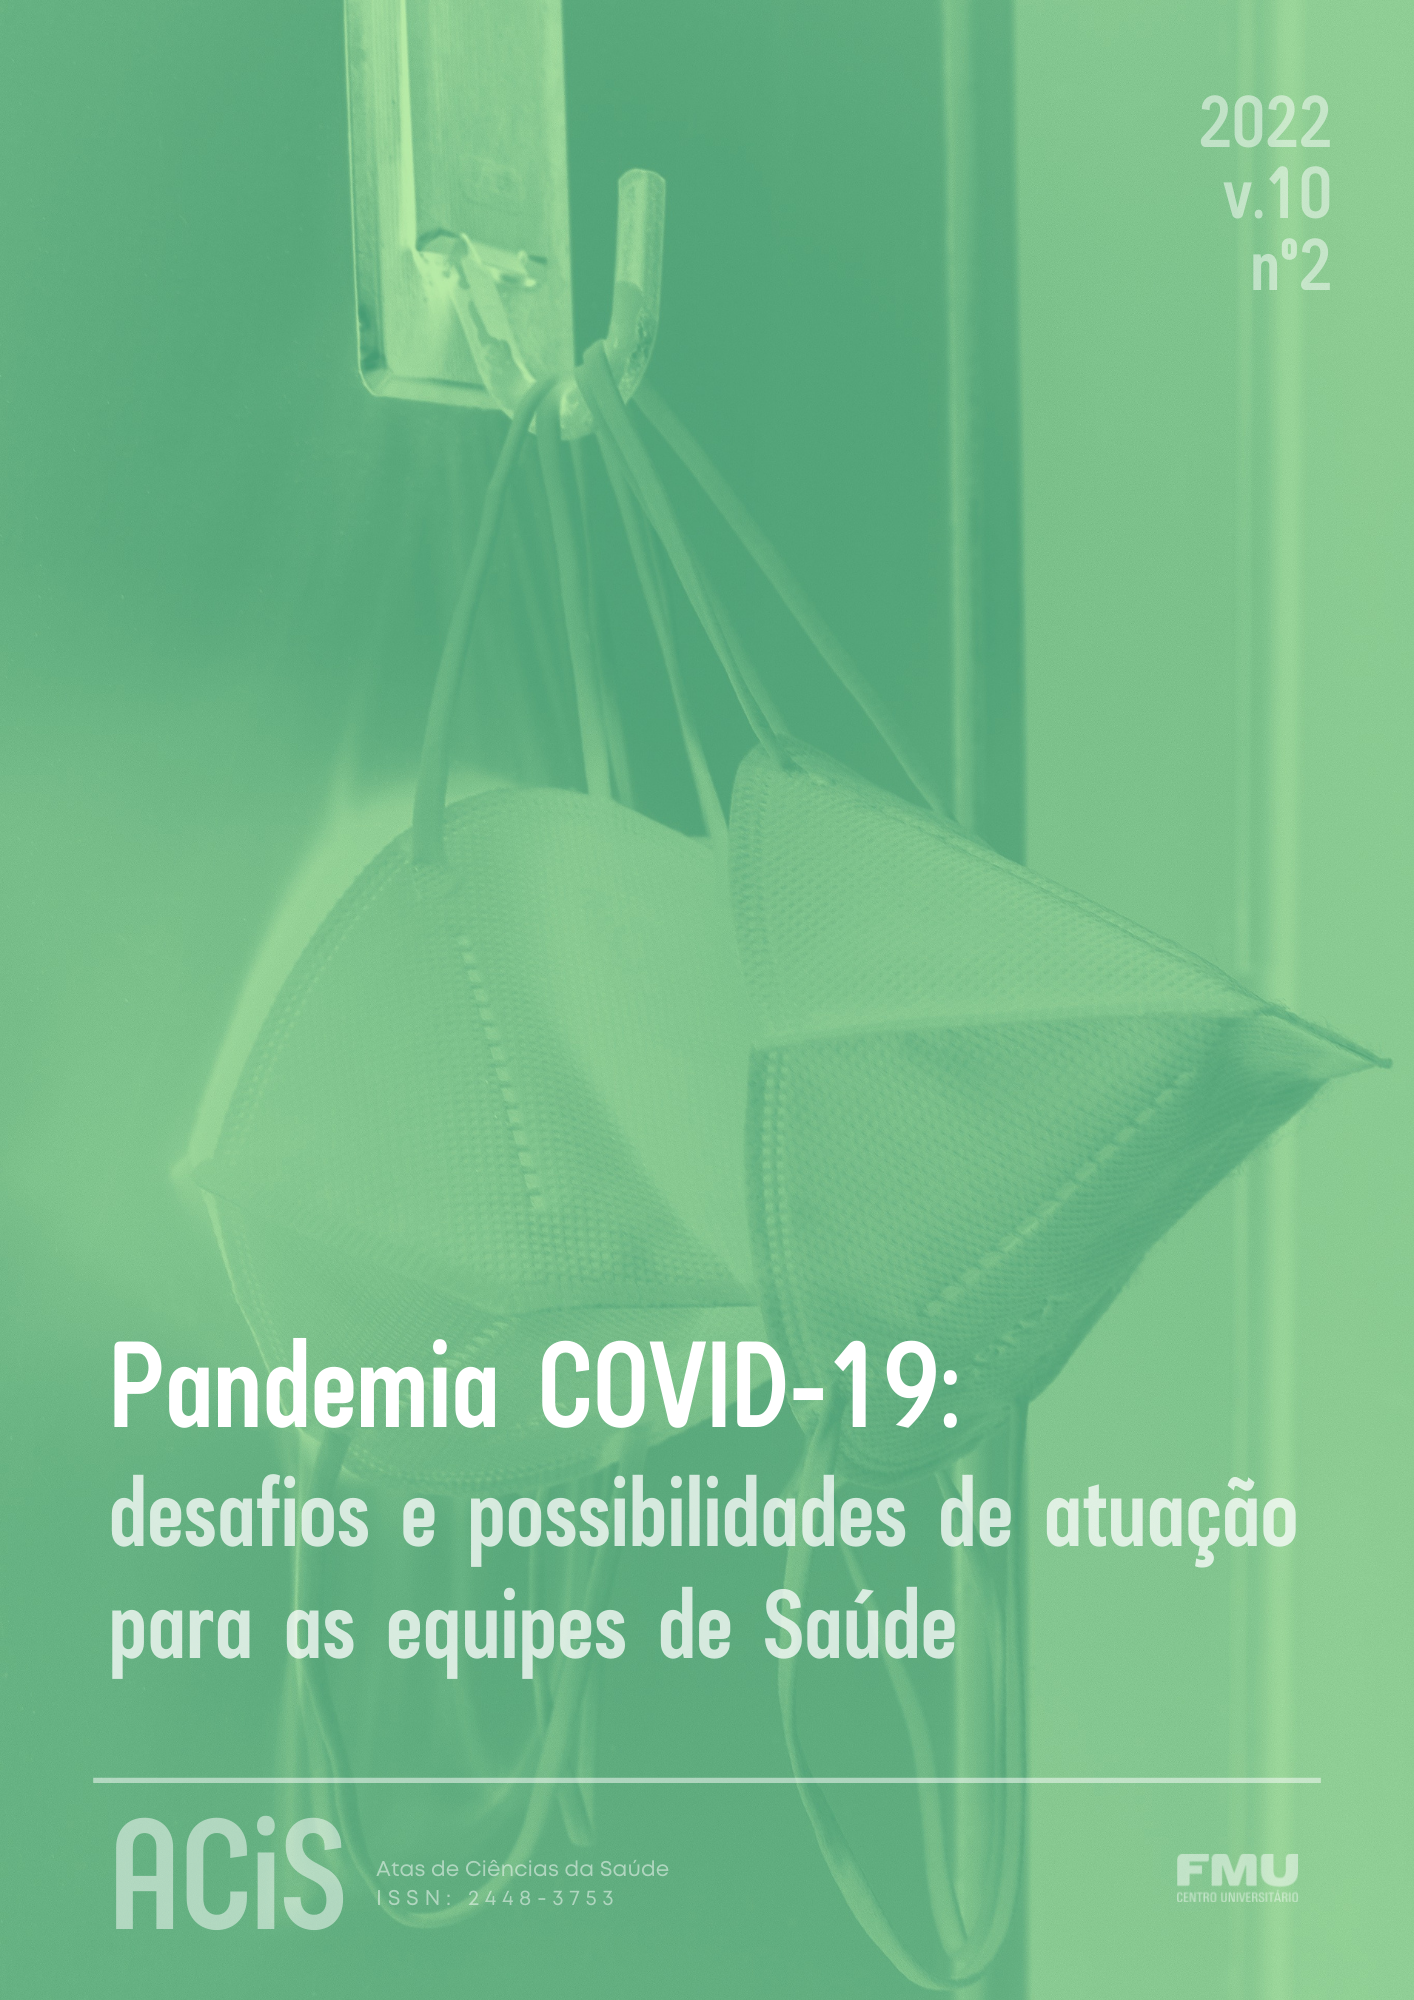 Capa da Revista ACiS com imagem de máscaras de proteção utilizadas durante a pandemia de COVID-19